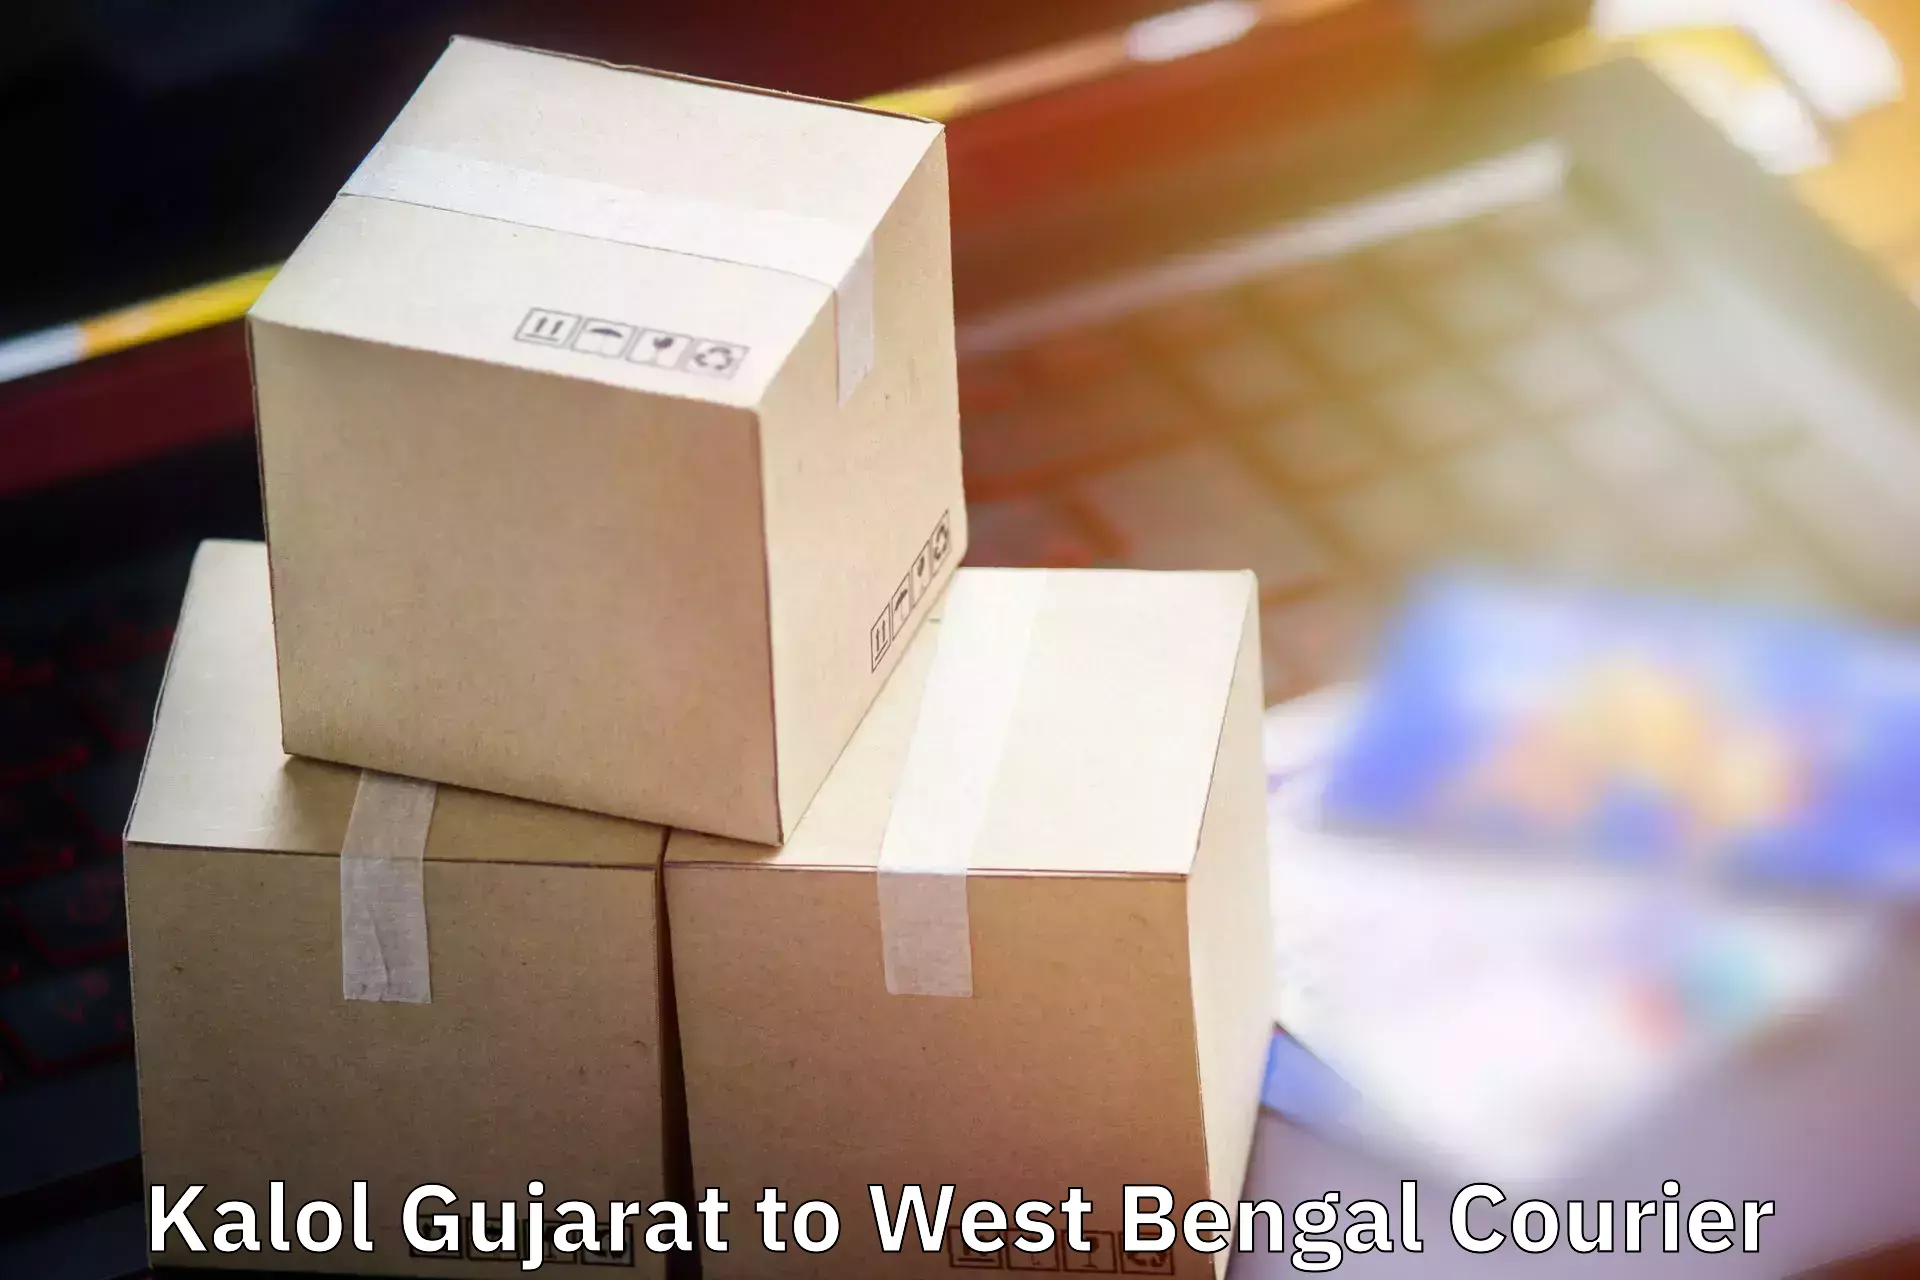 Hassle-free luggage shipping Kalol Gujarat to Fatepur